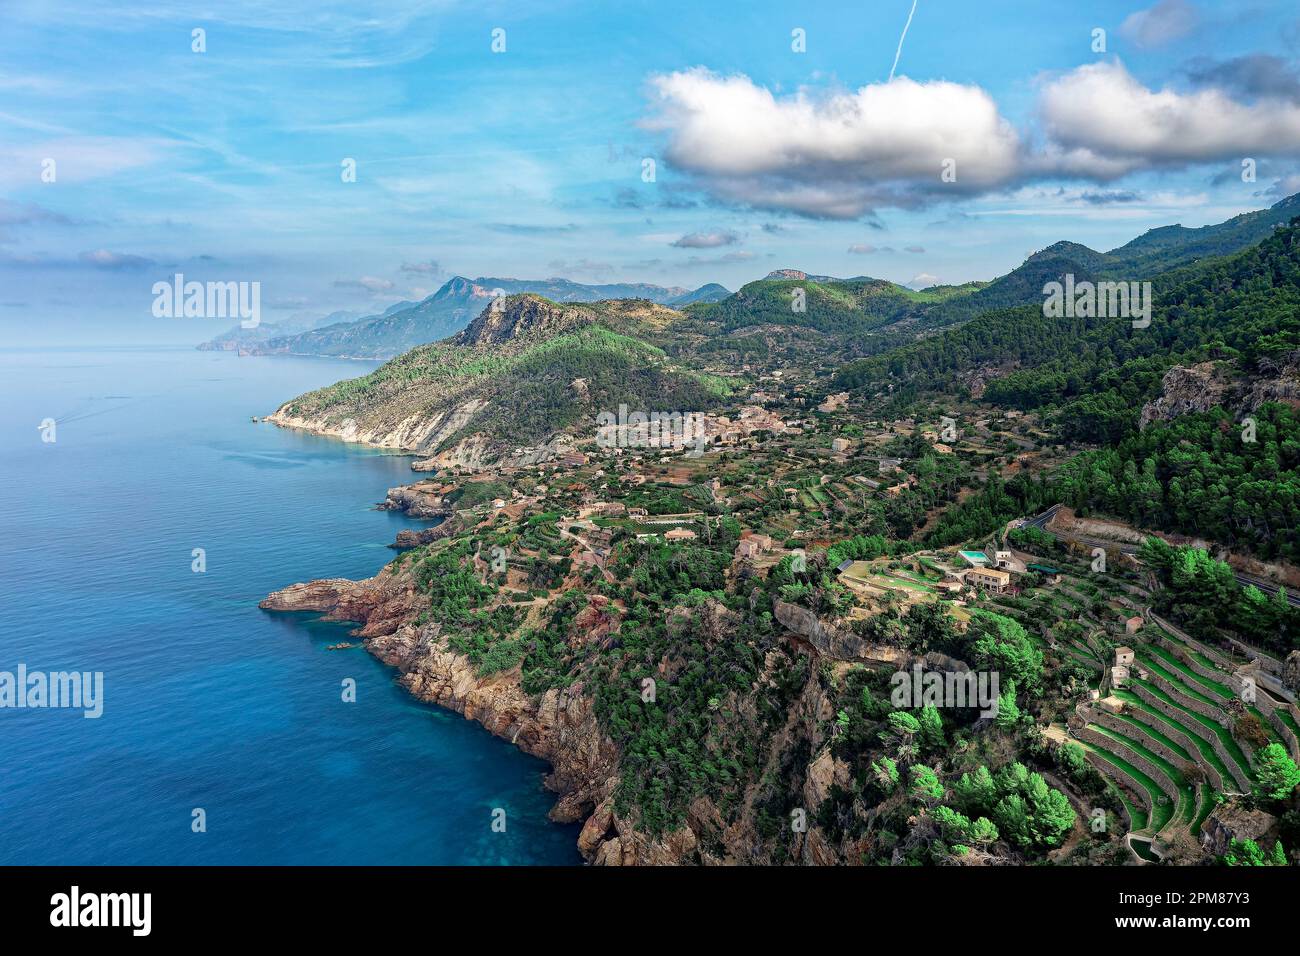 Spagna, Isole Baleari, Maiorca, Serra de Tramuntana dichiarata Patrimonio Mondiale dall'UNESCO, Banyalbufar, il villaggio e i suoi raccolti terrazzati (vista aerea) Foto Stock